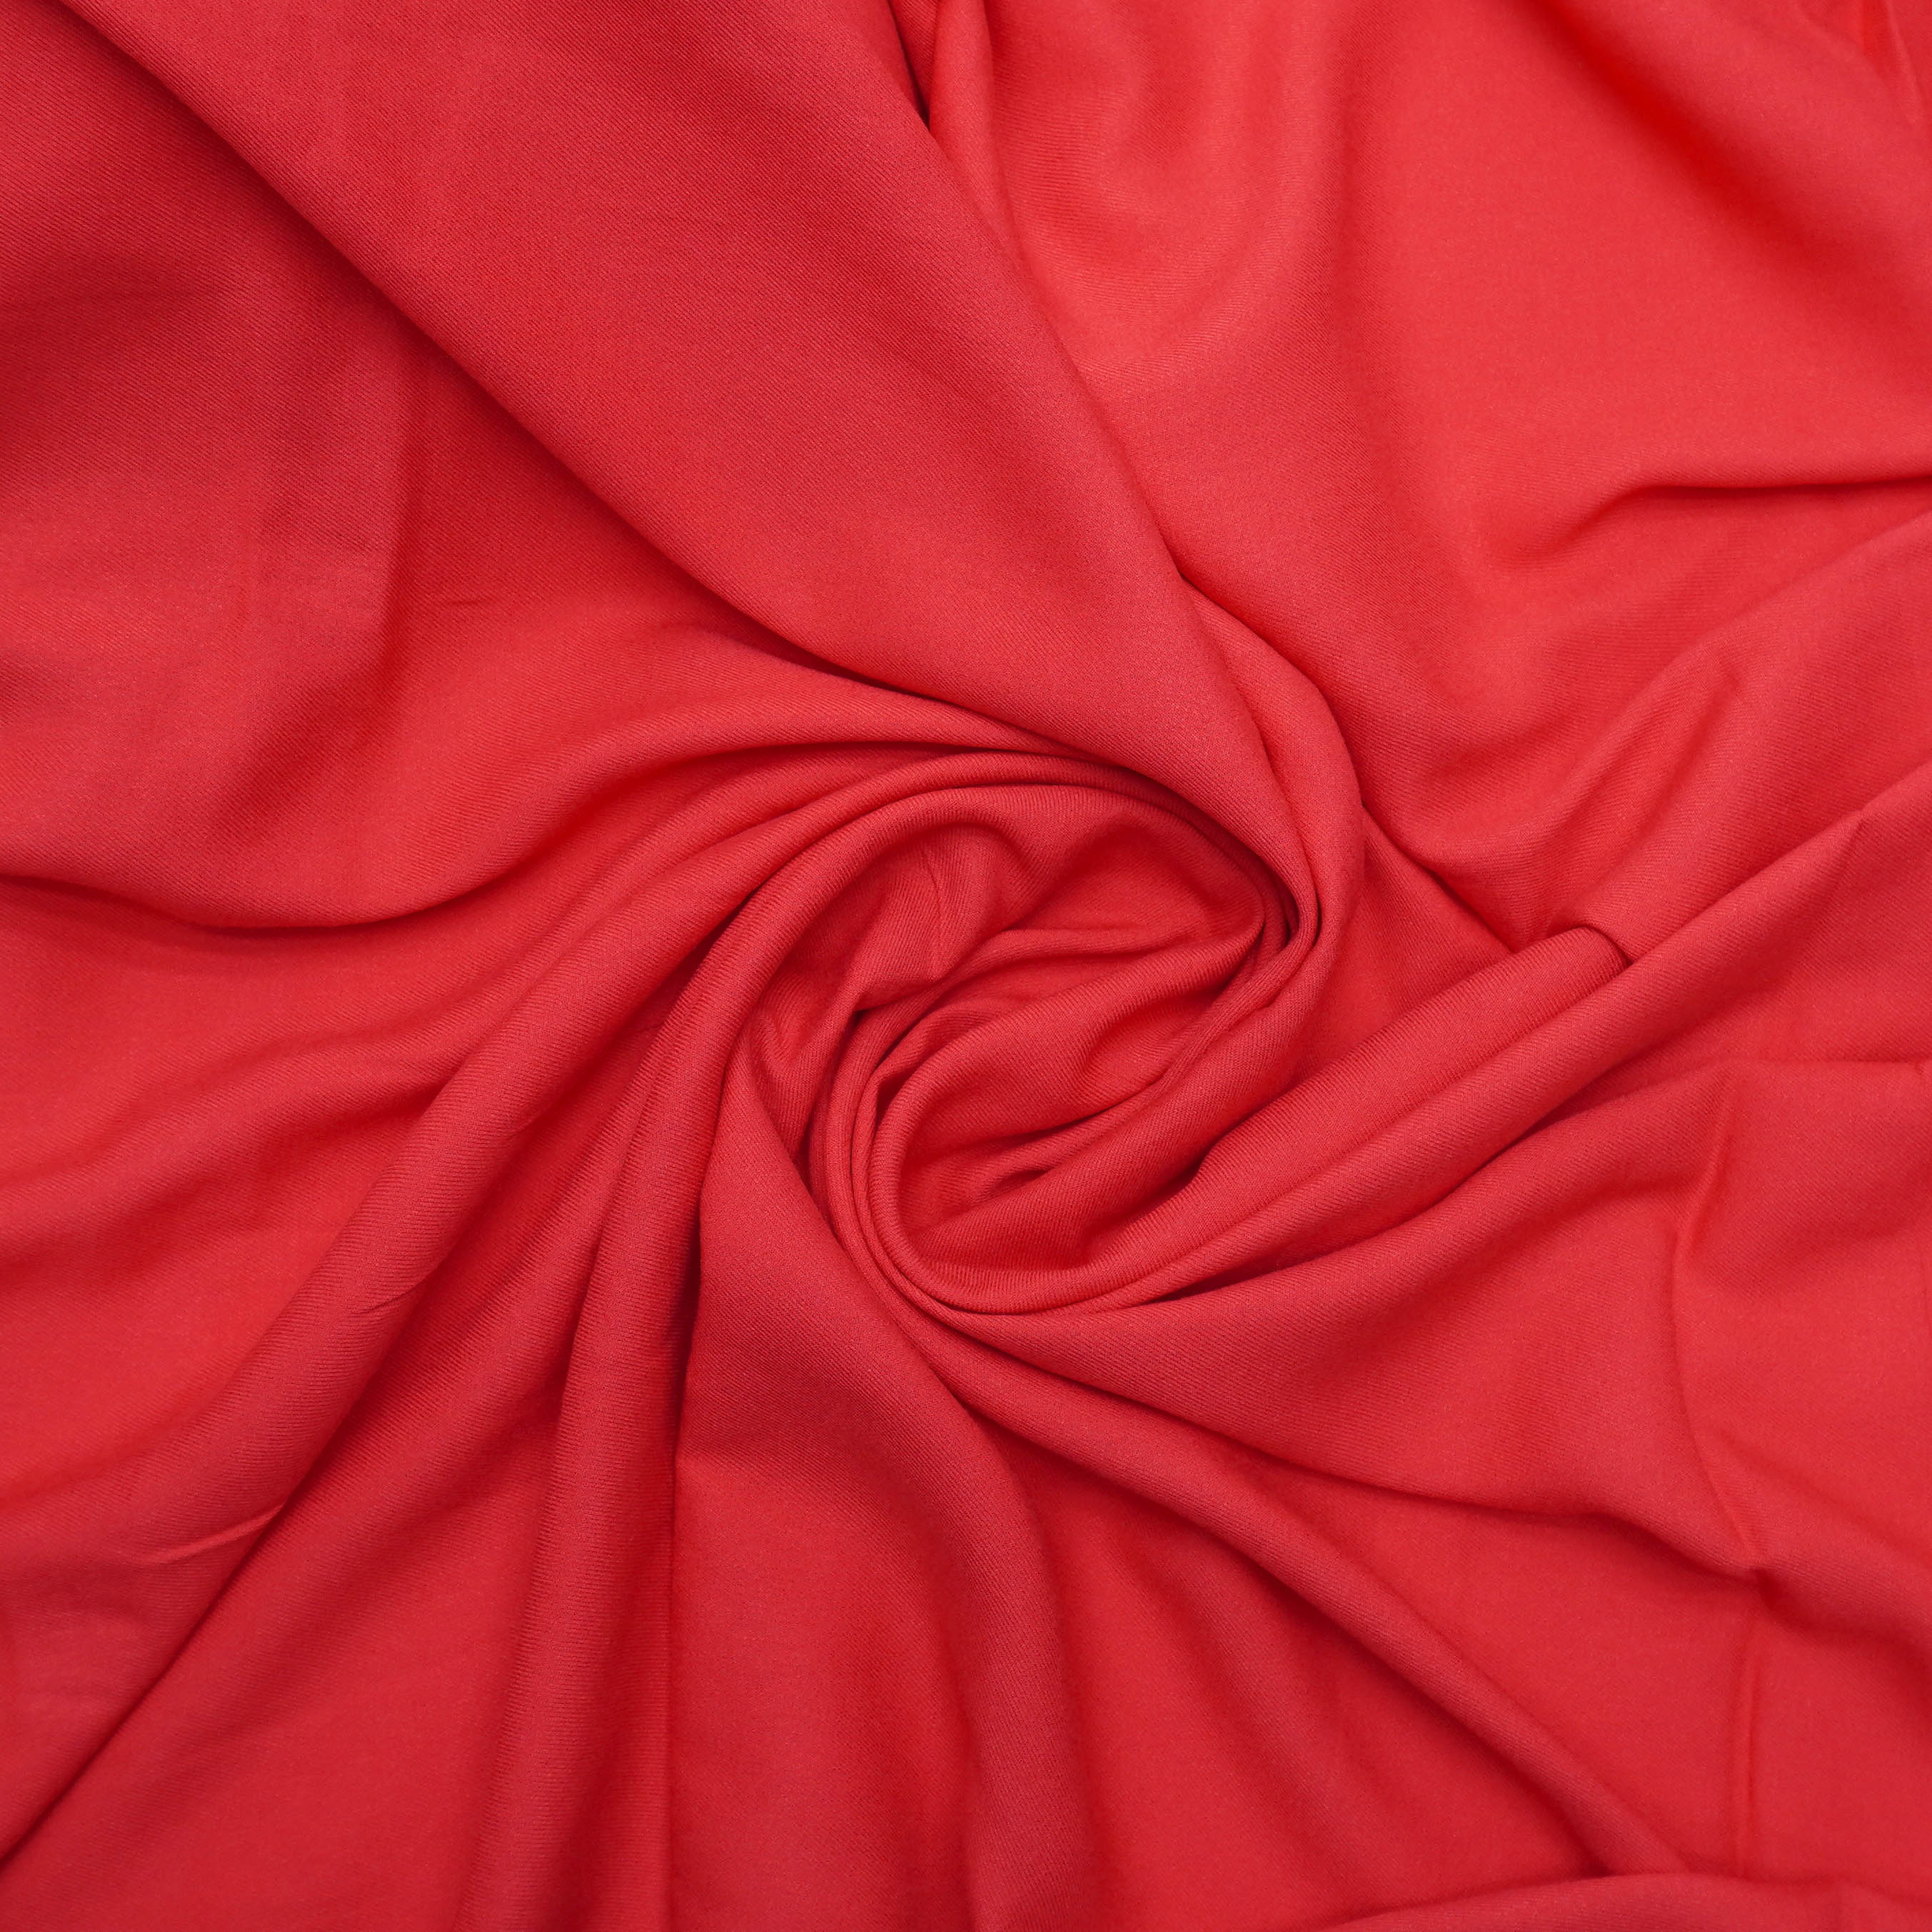 Plain Viscose Rayon Fabric